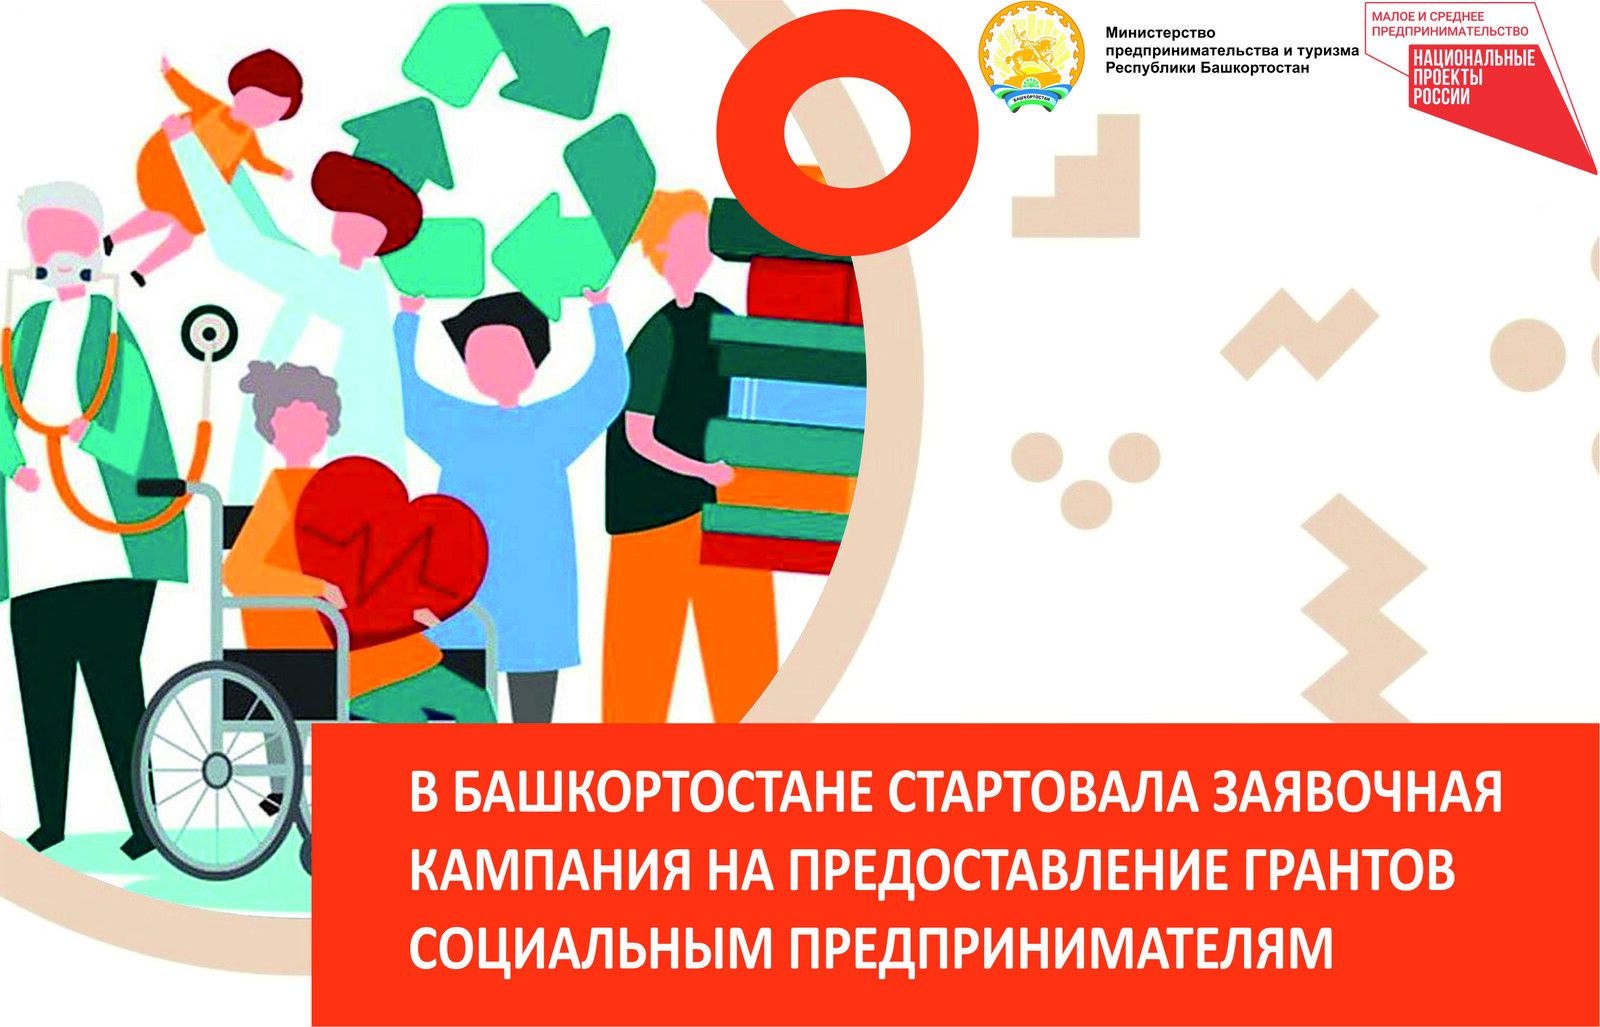 В Башкирии стартовал конкурс  на предоставление грантов социальным предпринимателям